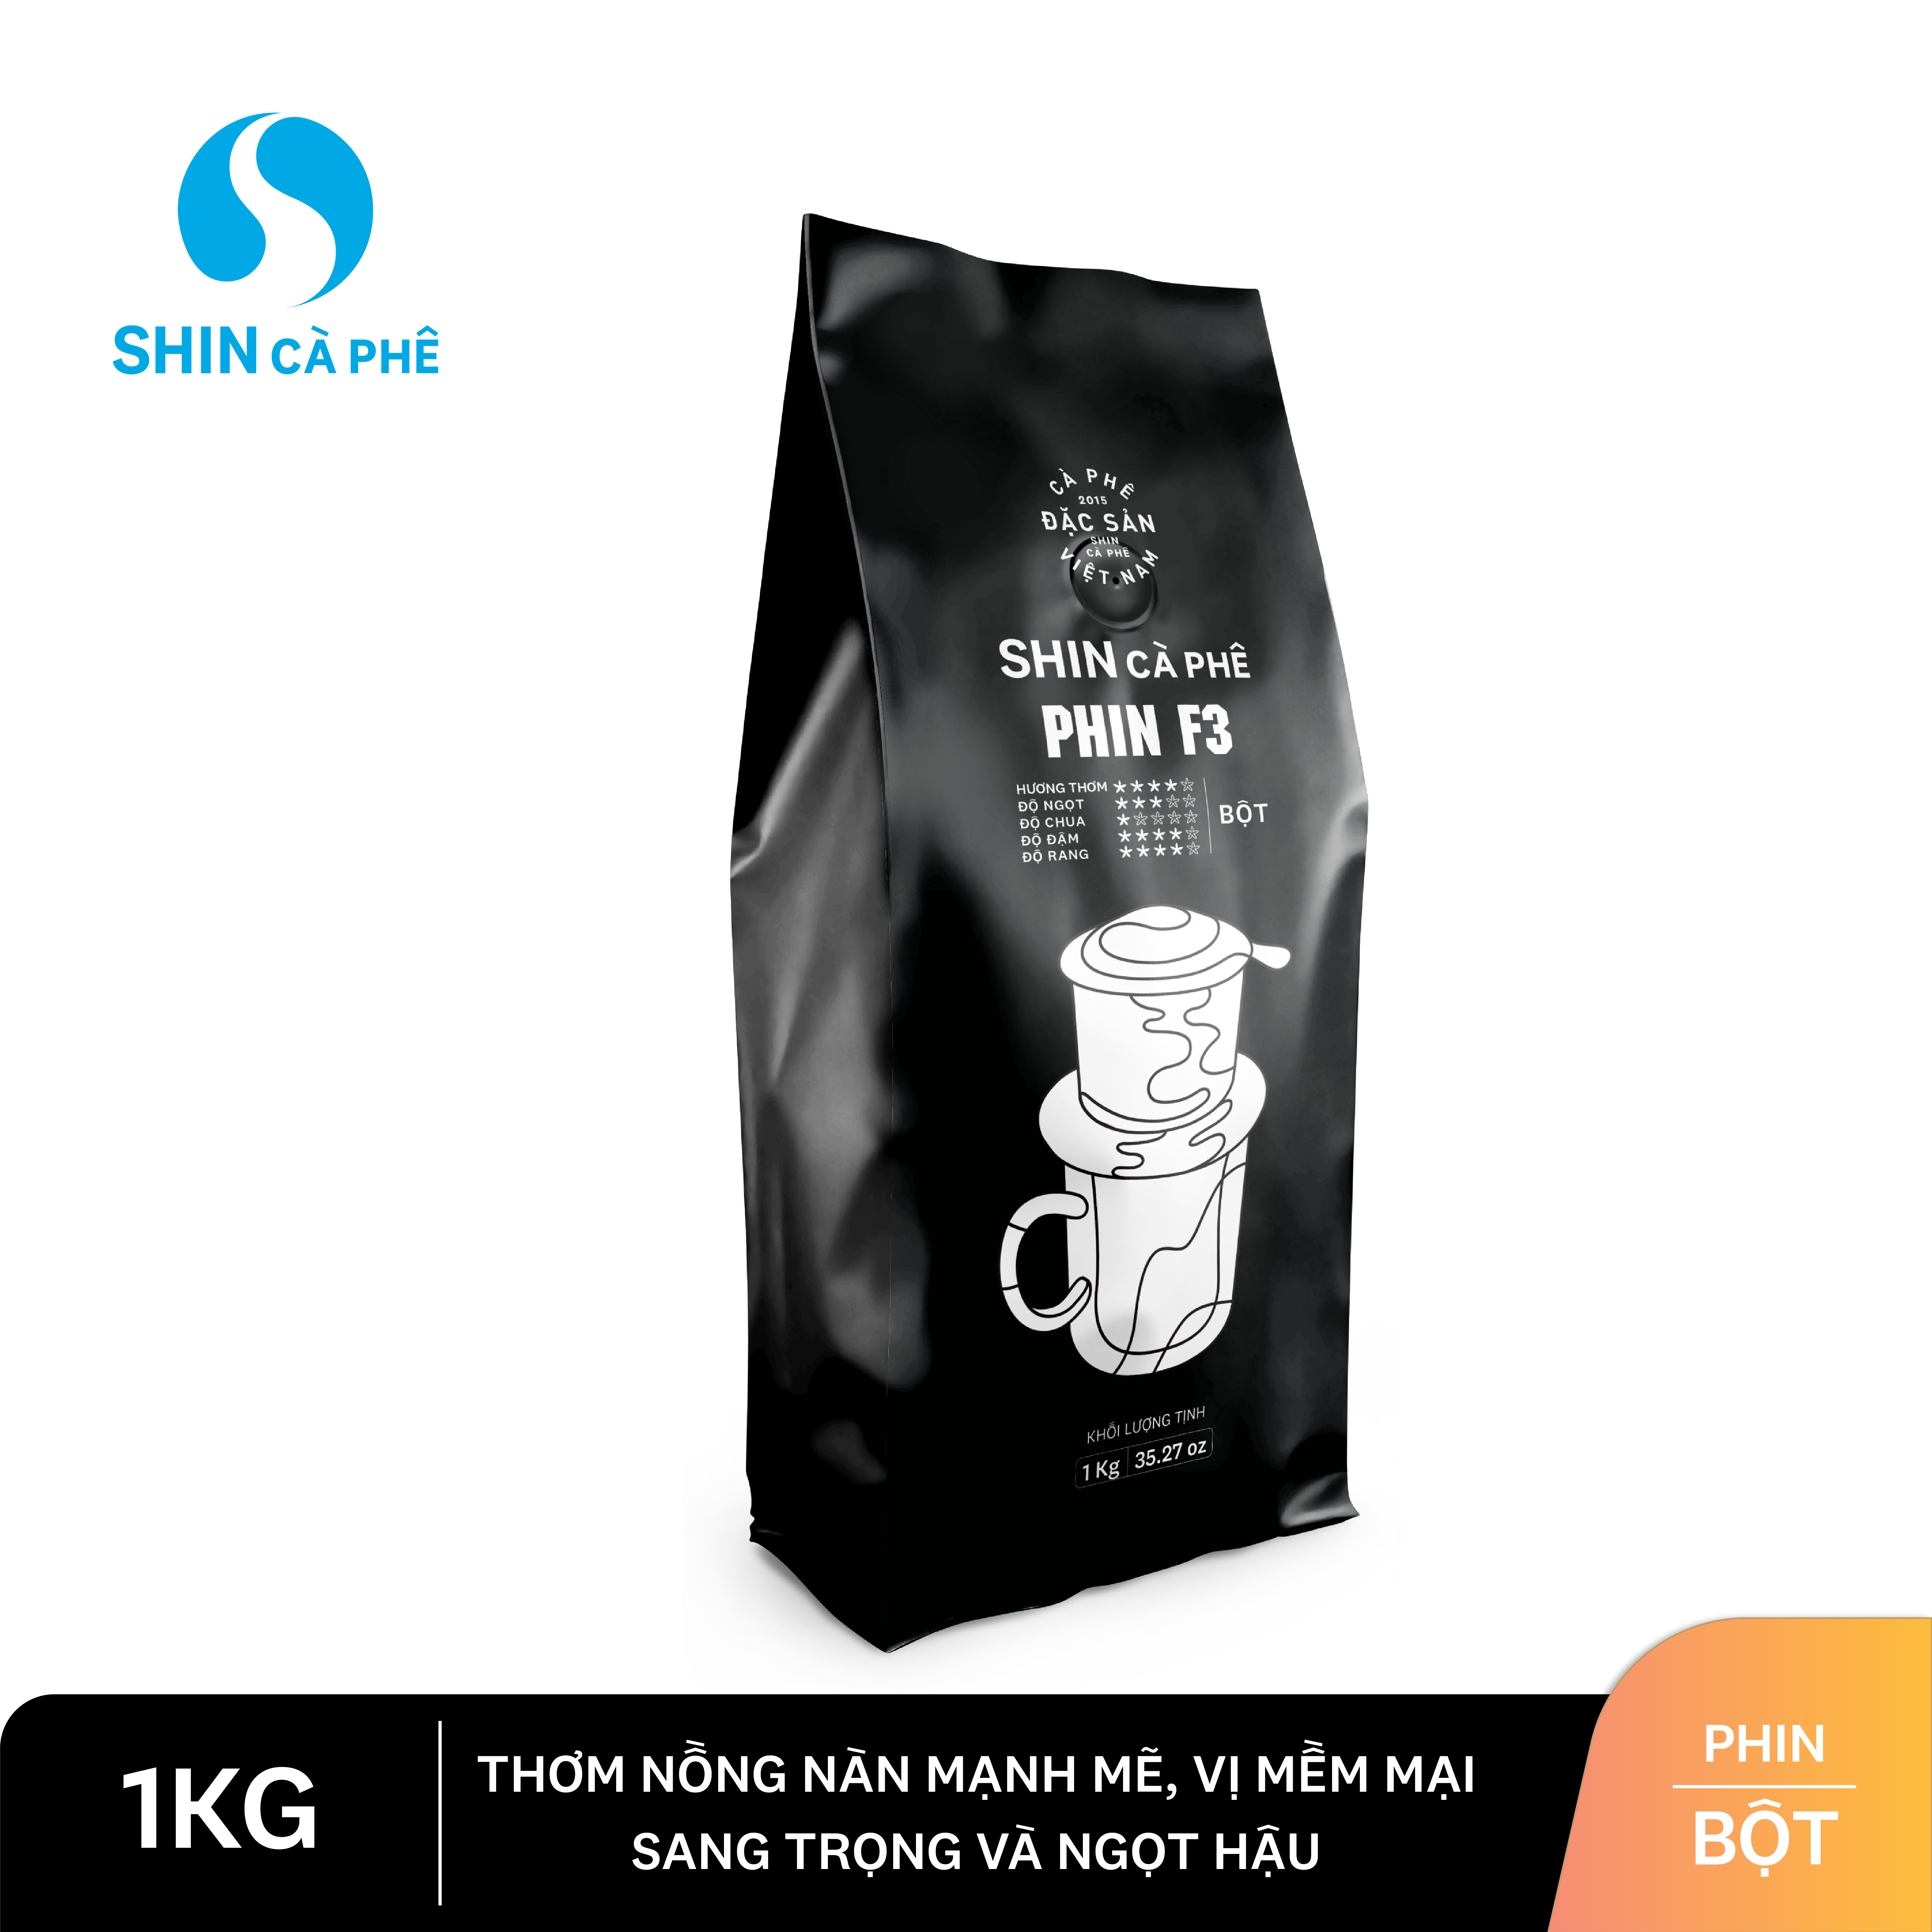 SHIN Cà Phê - Phin F3 túi 1kg - Cà phê nguyên chất pha phin